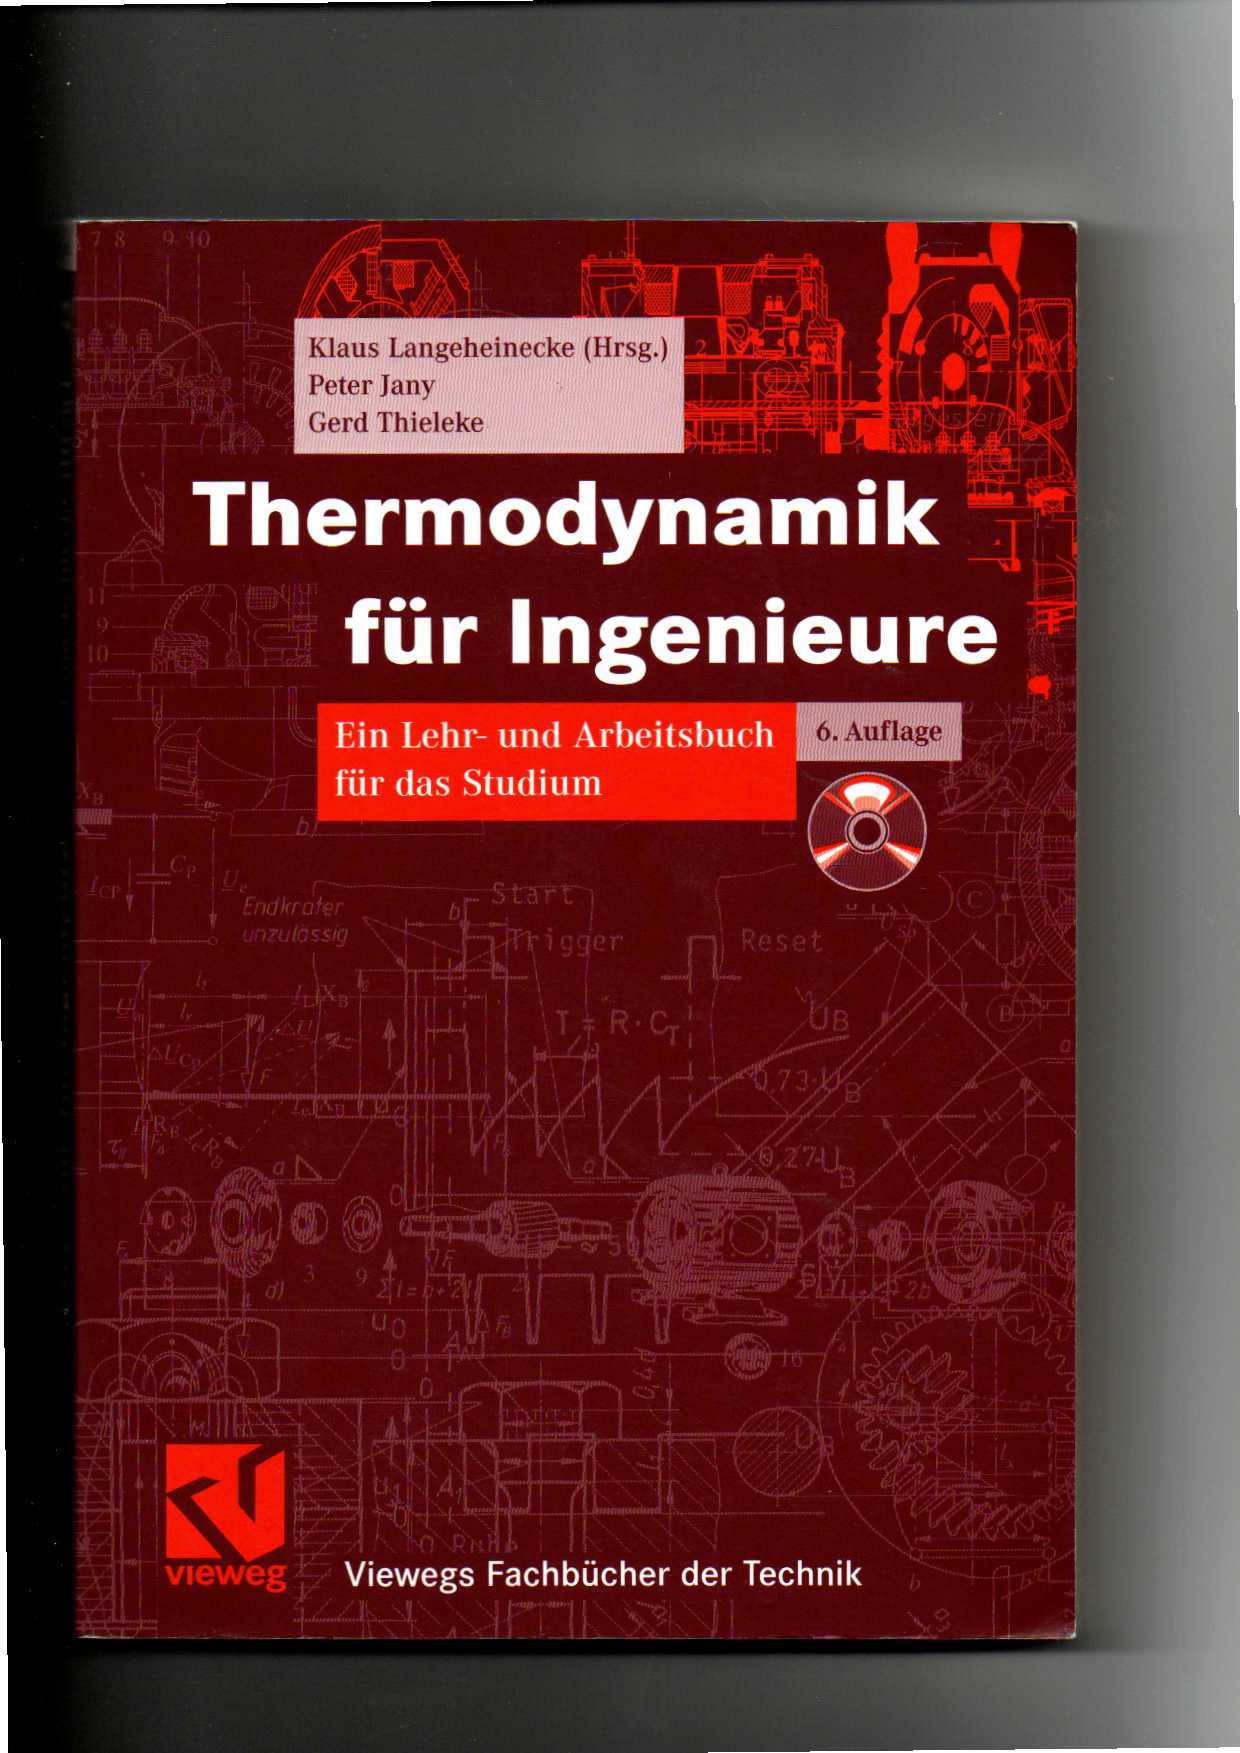 Klaus Langeheinecke, Thermodynamik für Ingenieure - Lehr- und Arbeitsbuch / 6. Auflage  6. Auflage - Langeheinecke, Klaus (Verfasser), Peter (Verfasser) Jany und Gerd (Verfasser) Thieleke